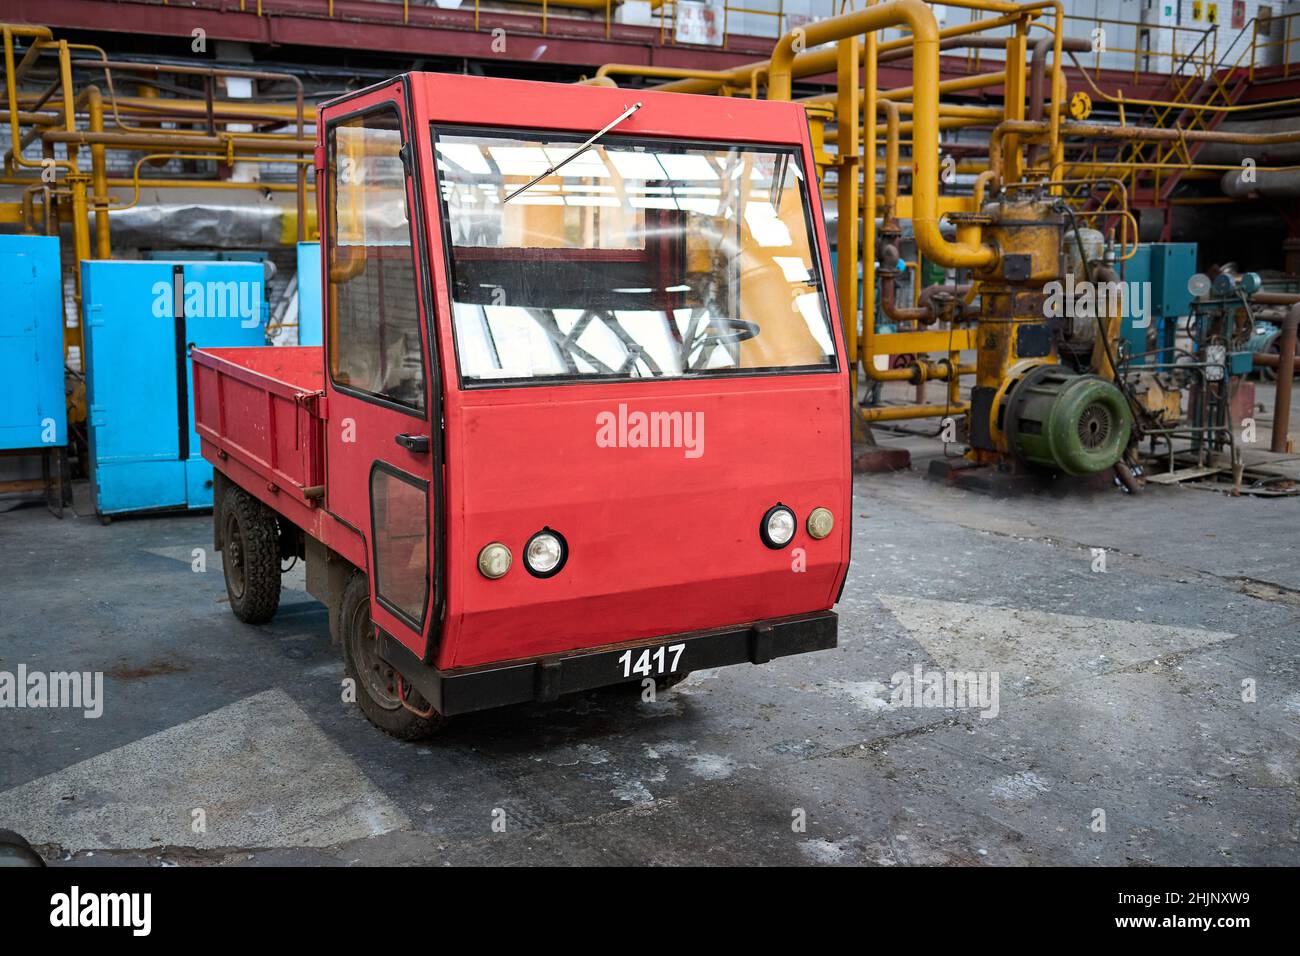 Novomoskovsk, Russia - Dicembre 2021: Veicolo elettrico da carico di vecchio stile vintage rosso si trova in magazzino presso una fabbrica o un impianto industriale Foto Stock